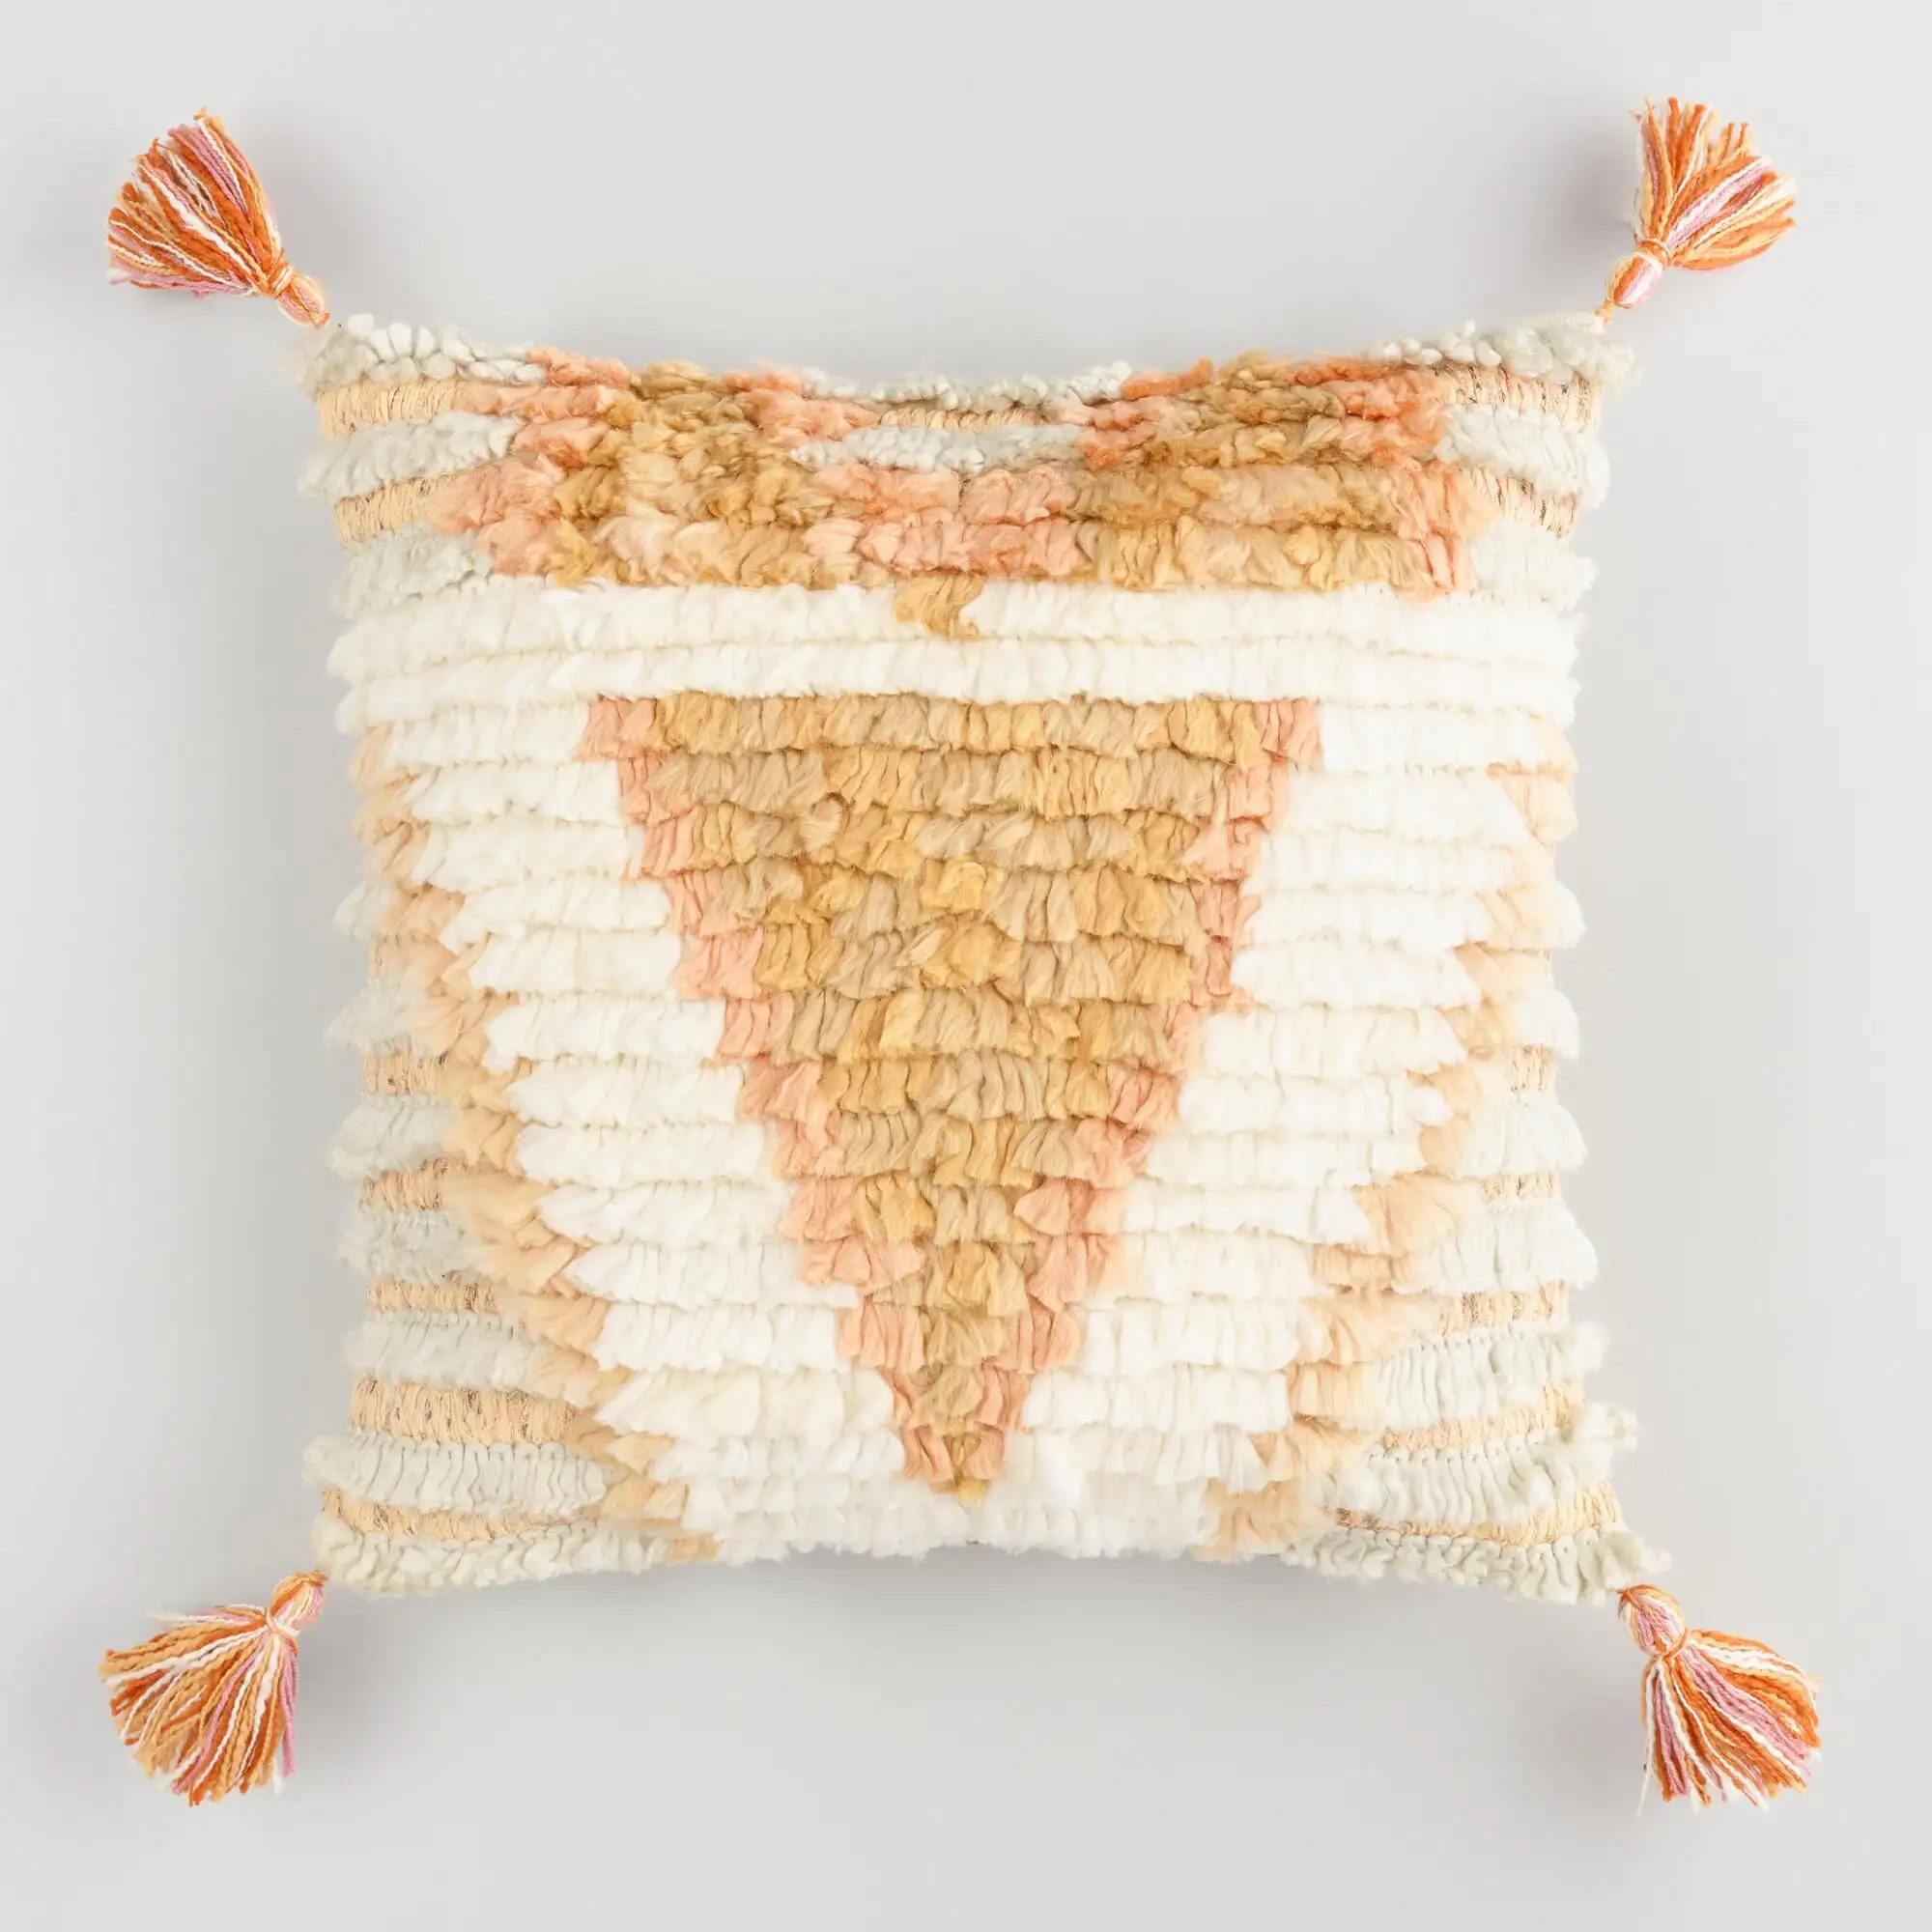 Esta almohada está hecha de una funda de almohada marroquí vintage, Fundas de cojín de lana marroquí, cojín decorativo para el hogar